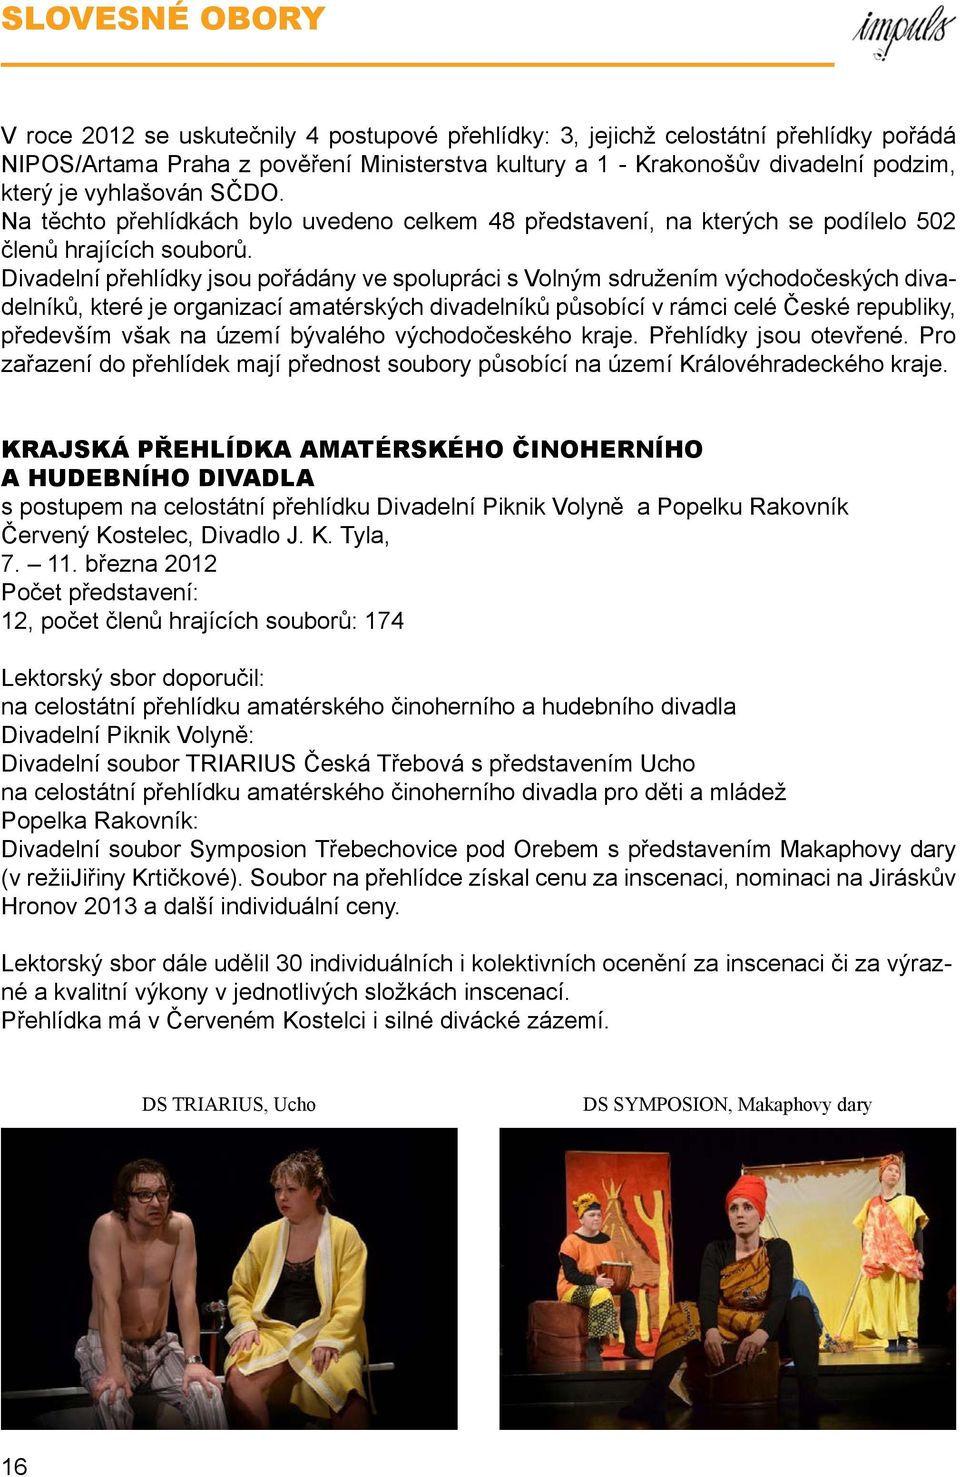 Divadelní přehlídky jsou pořádány ve spolupráci s Volným sdružením východočeských divadelníků, které je organizací amatérských divadelníků působící v rámci celé České republiky, především však na